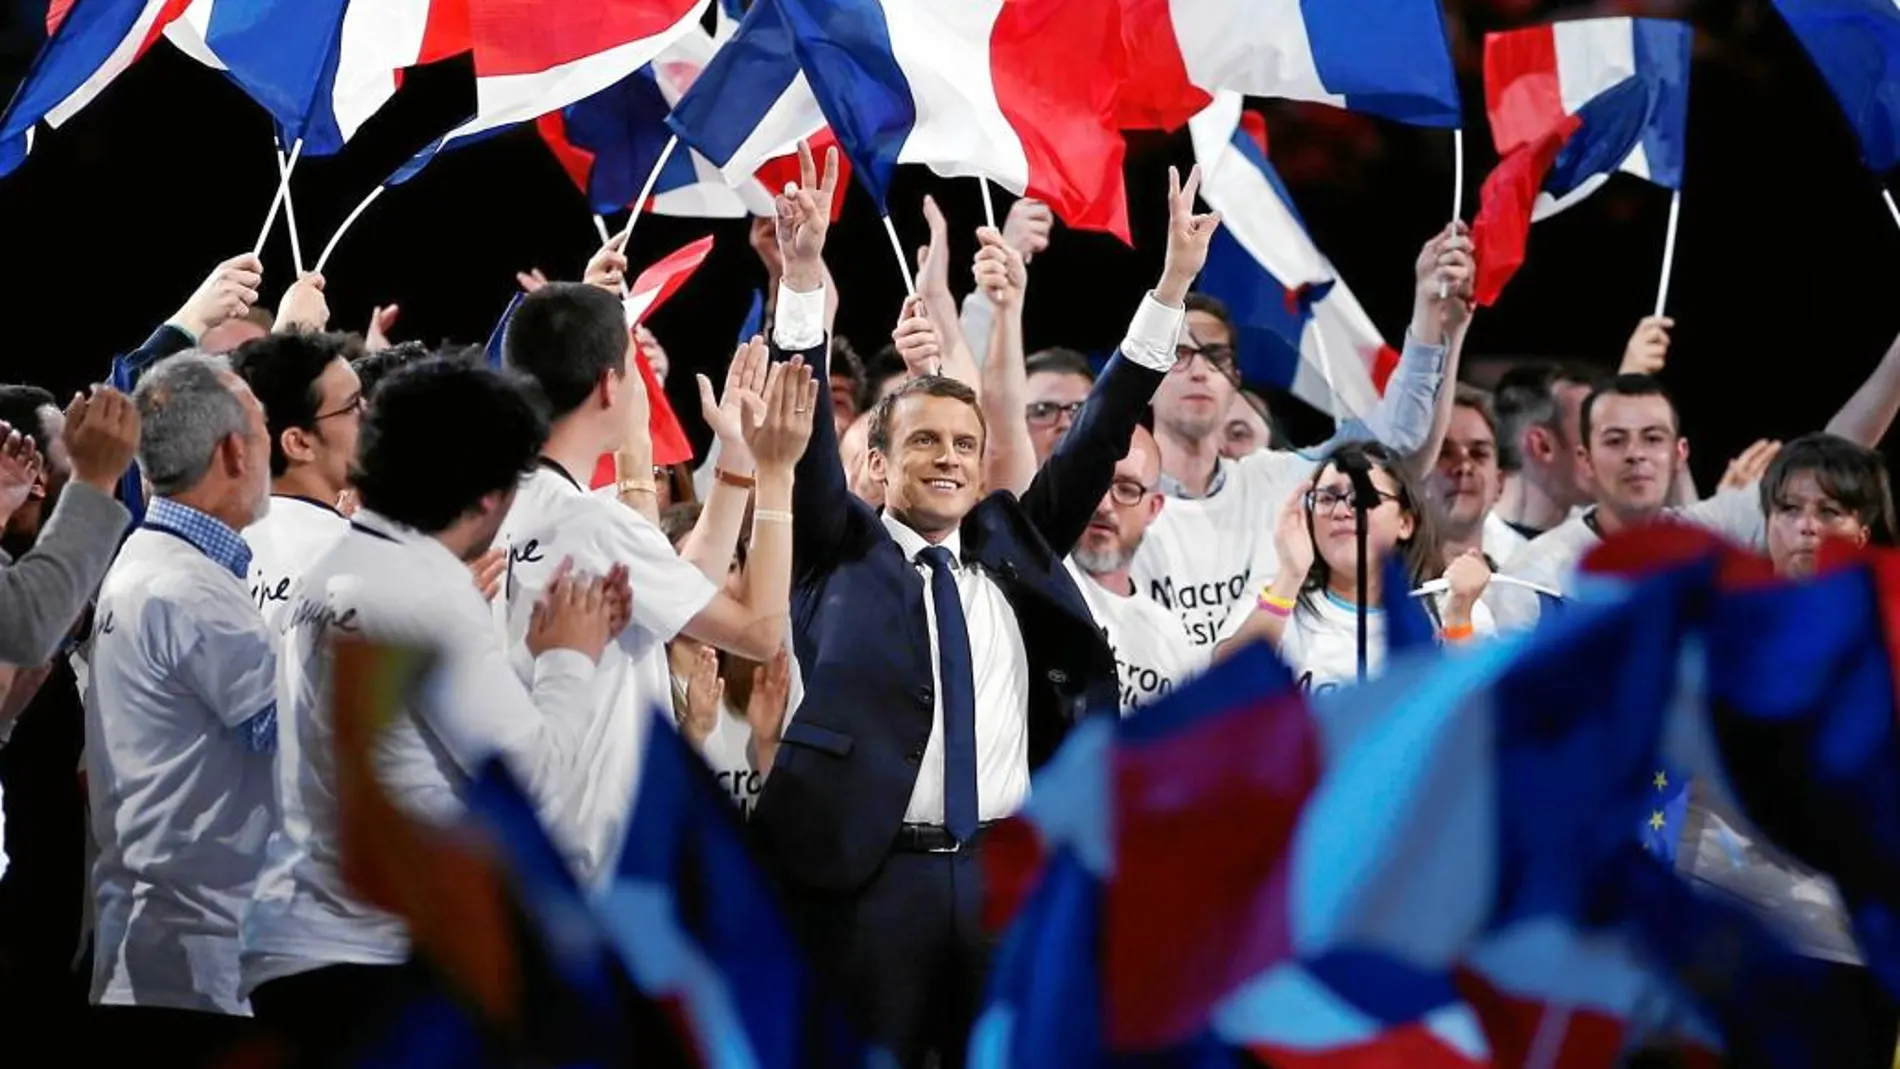 El duelo electoral entre dos Francias incompatibles